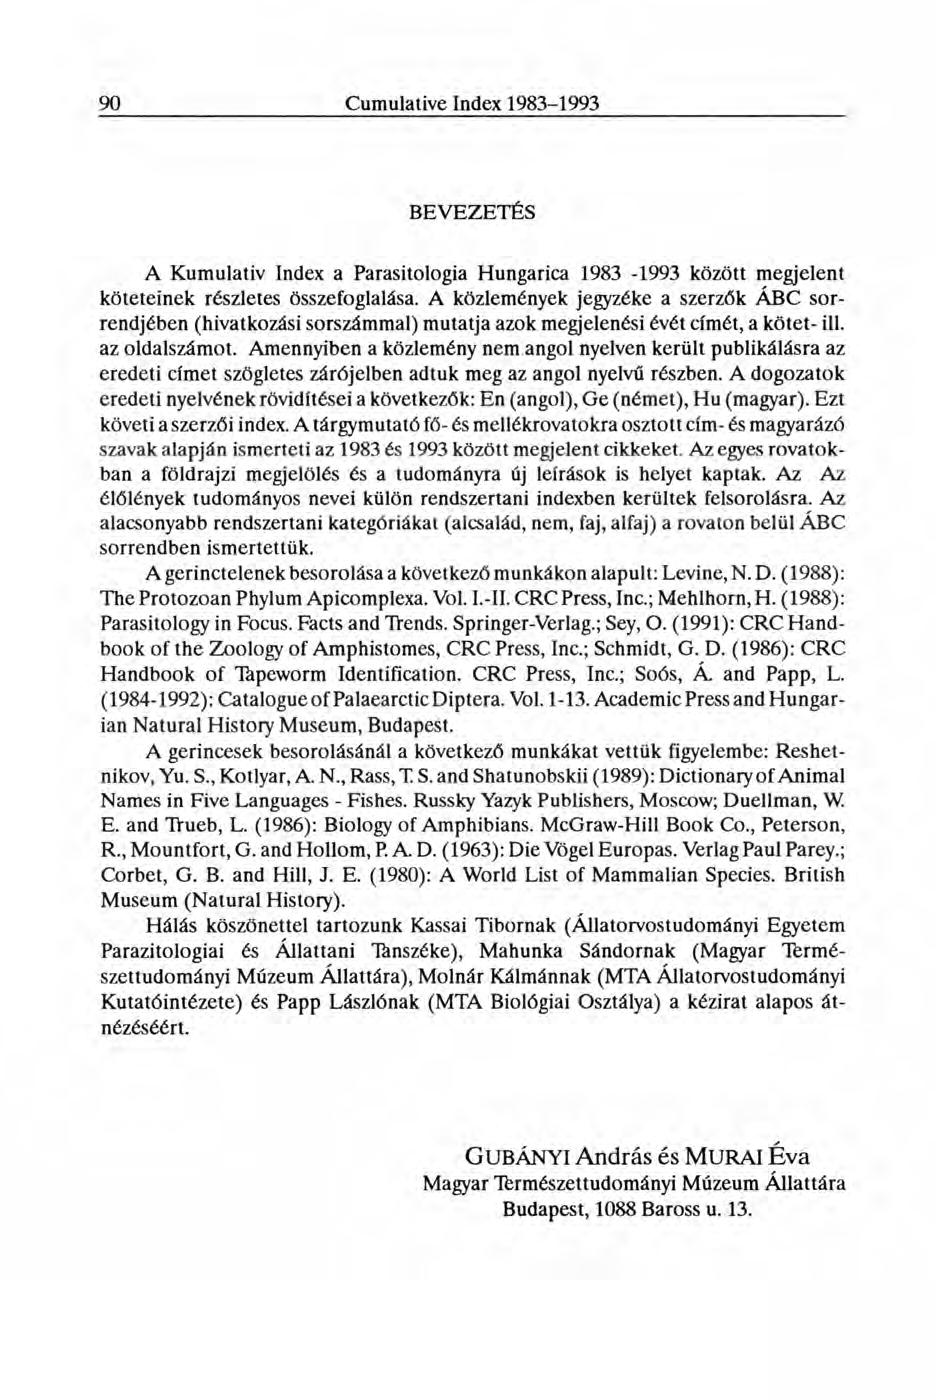 BEVEZETÉS A Kumulativ Index a Parasitologia Hungarica 1983-1993 között megjelent köteteinek részletes összefoglalása.